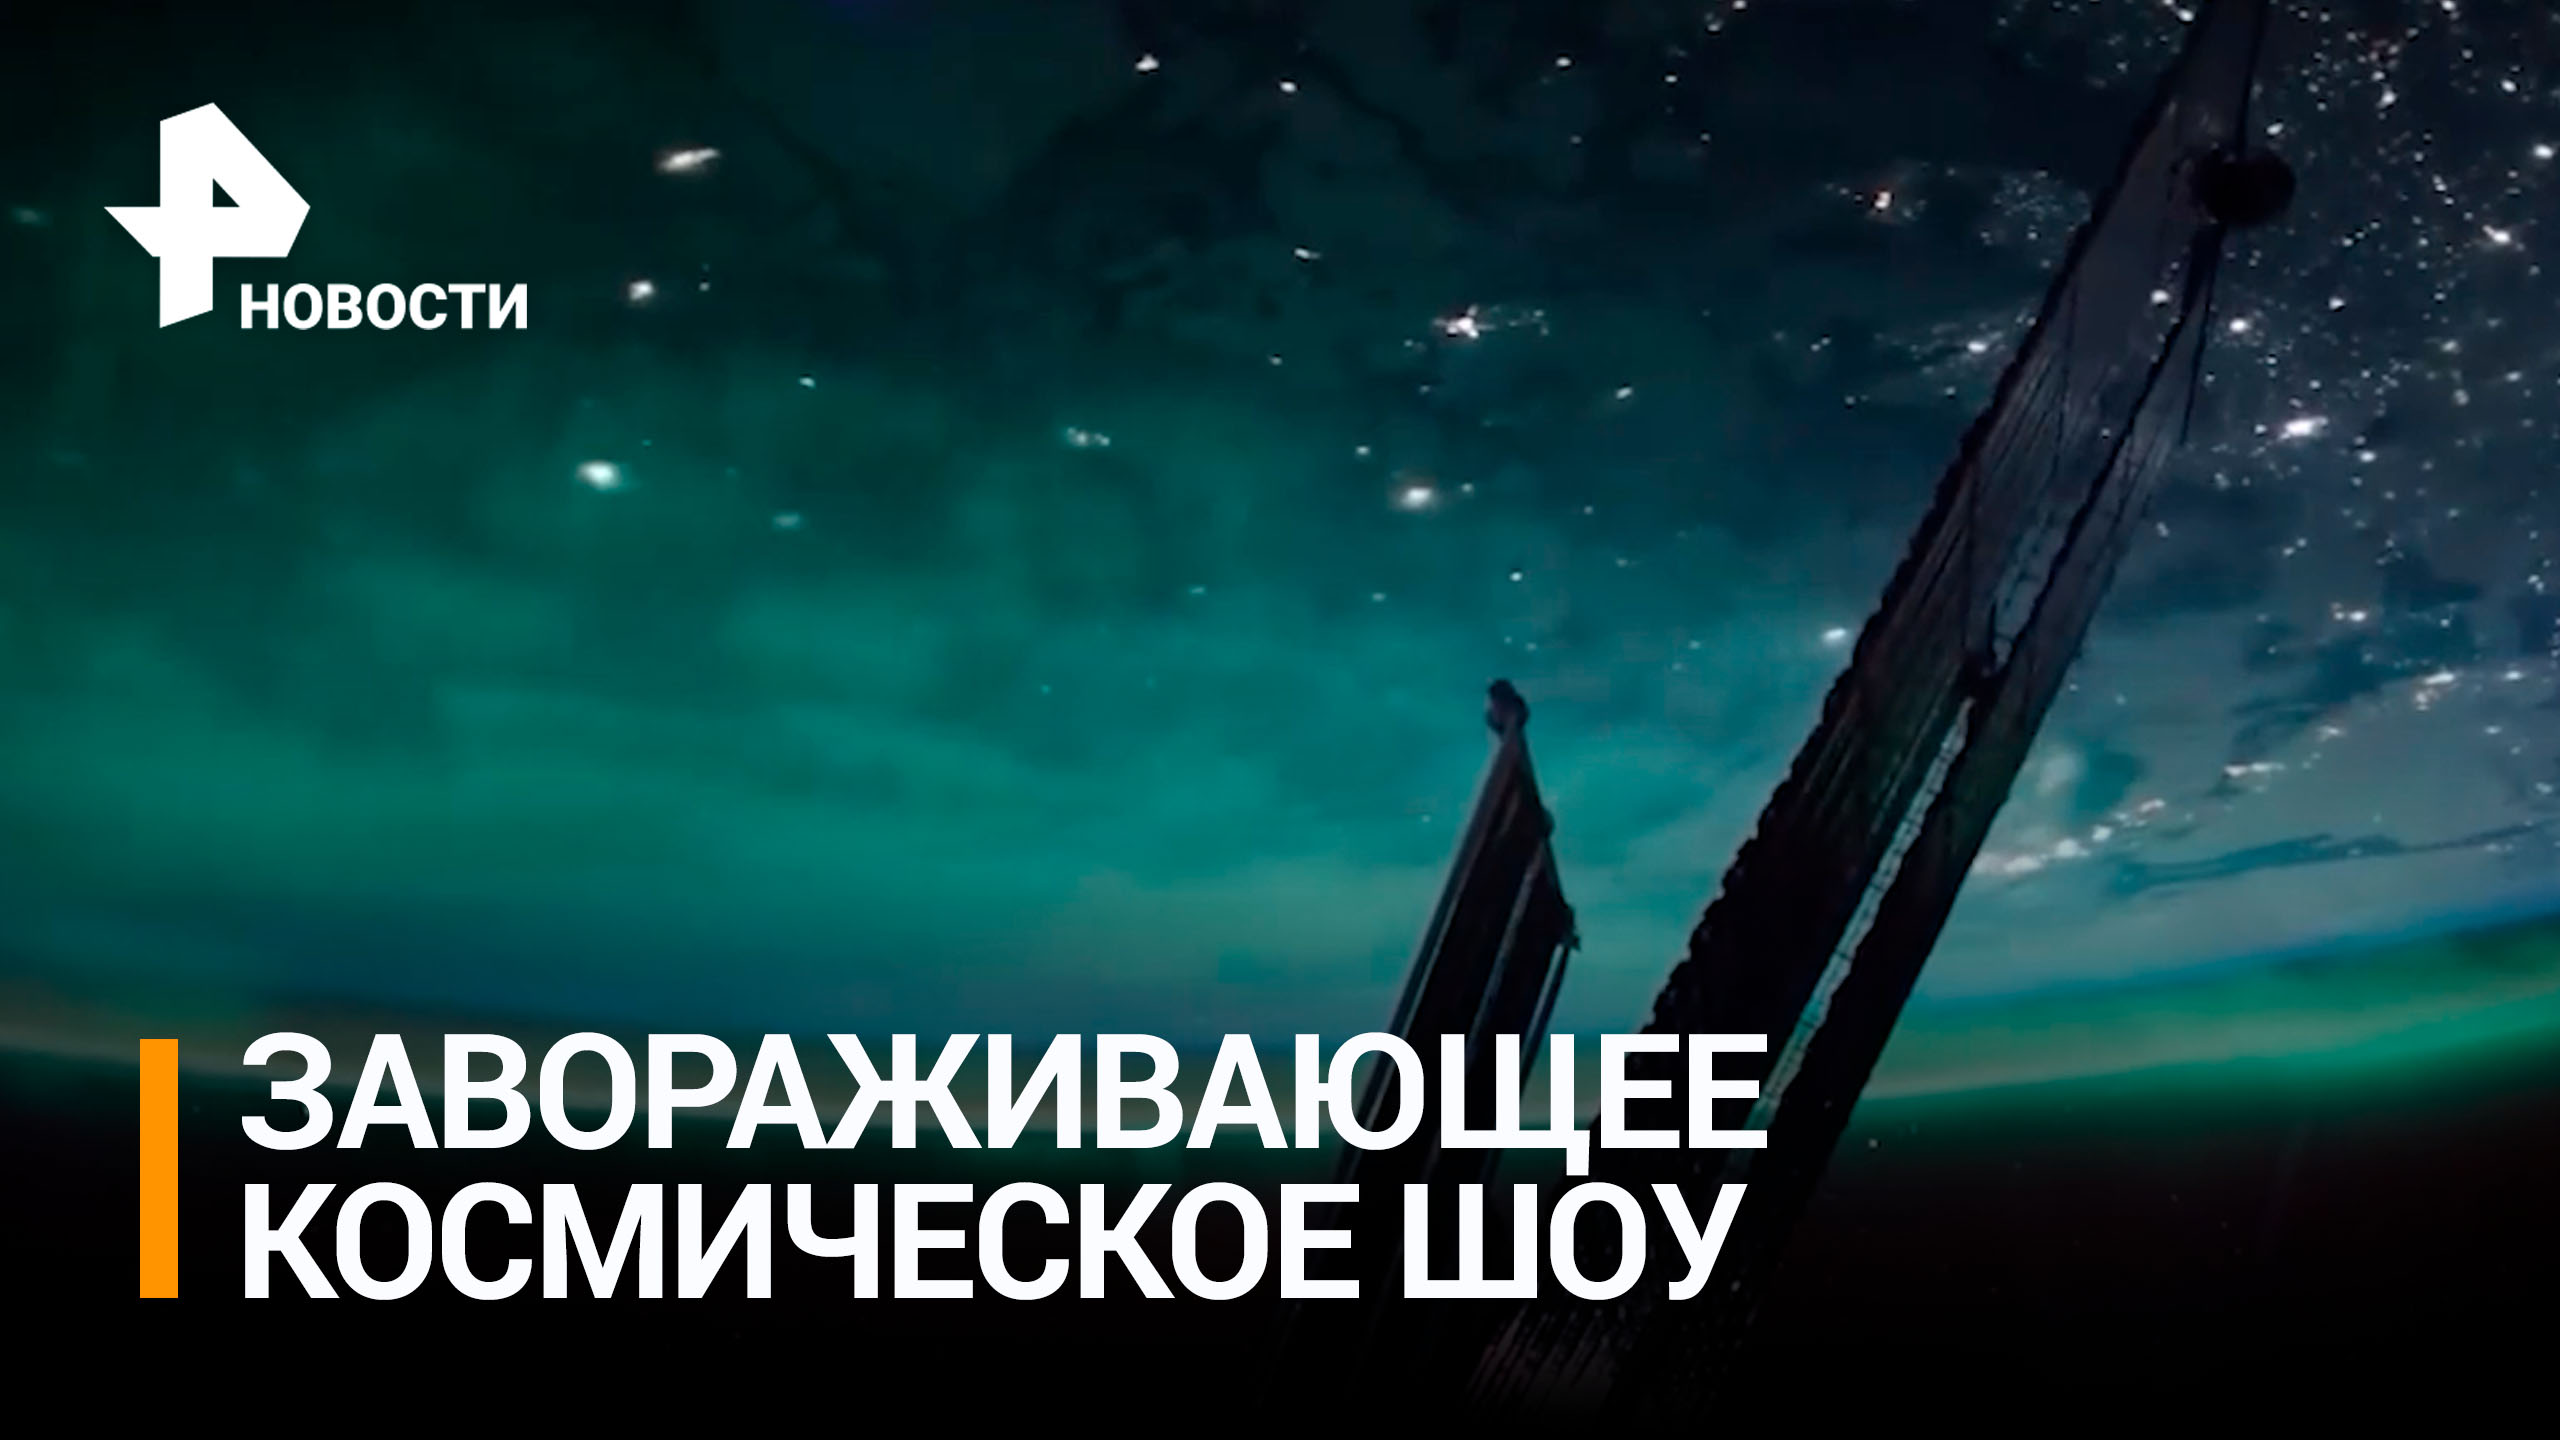 Полярное сияние над Землей сняли на видео на МКС / РЕН Новости